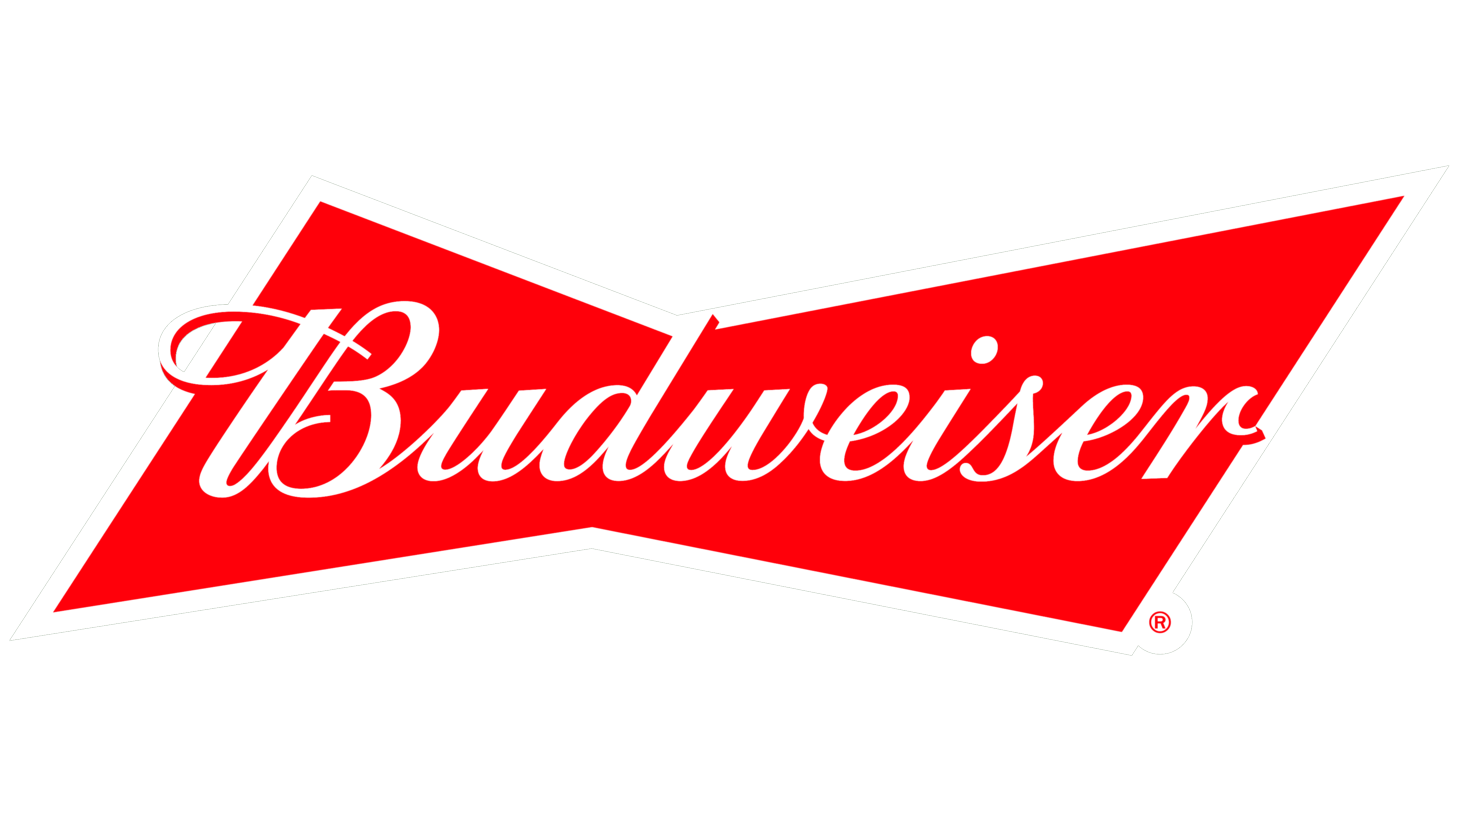 Budweiser sign